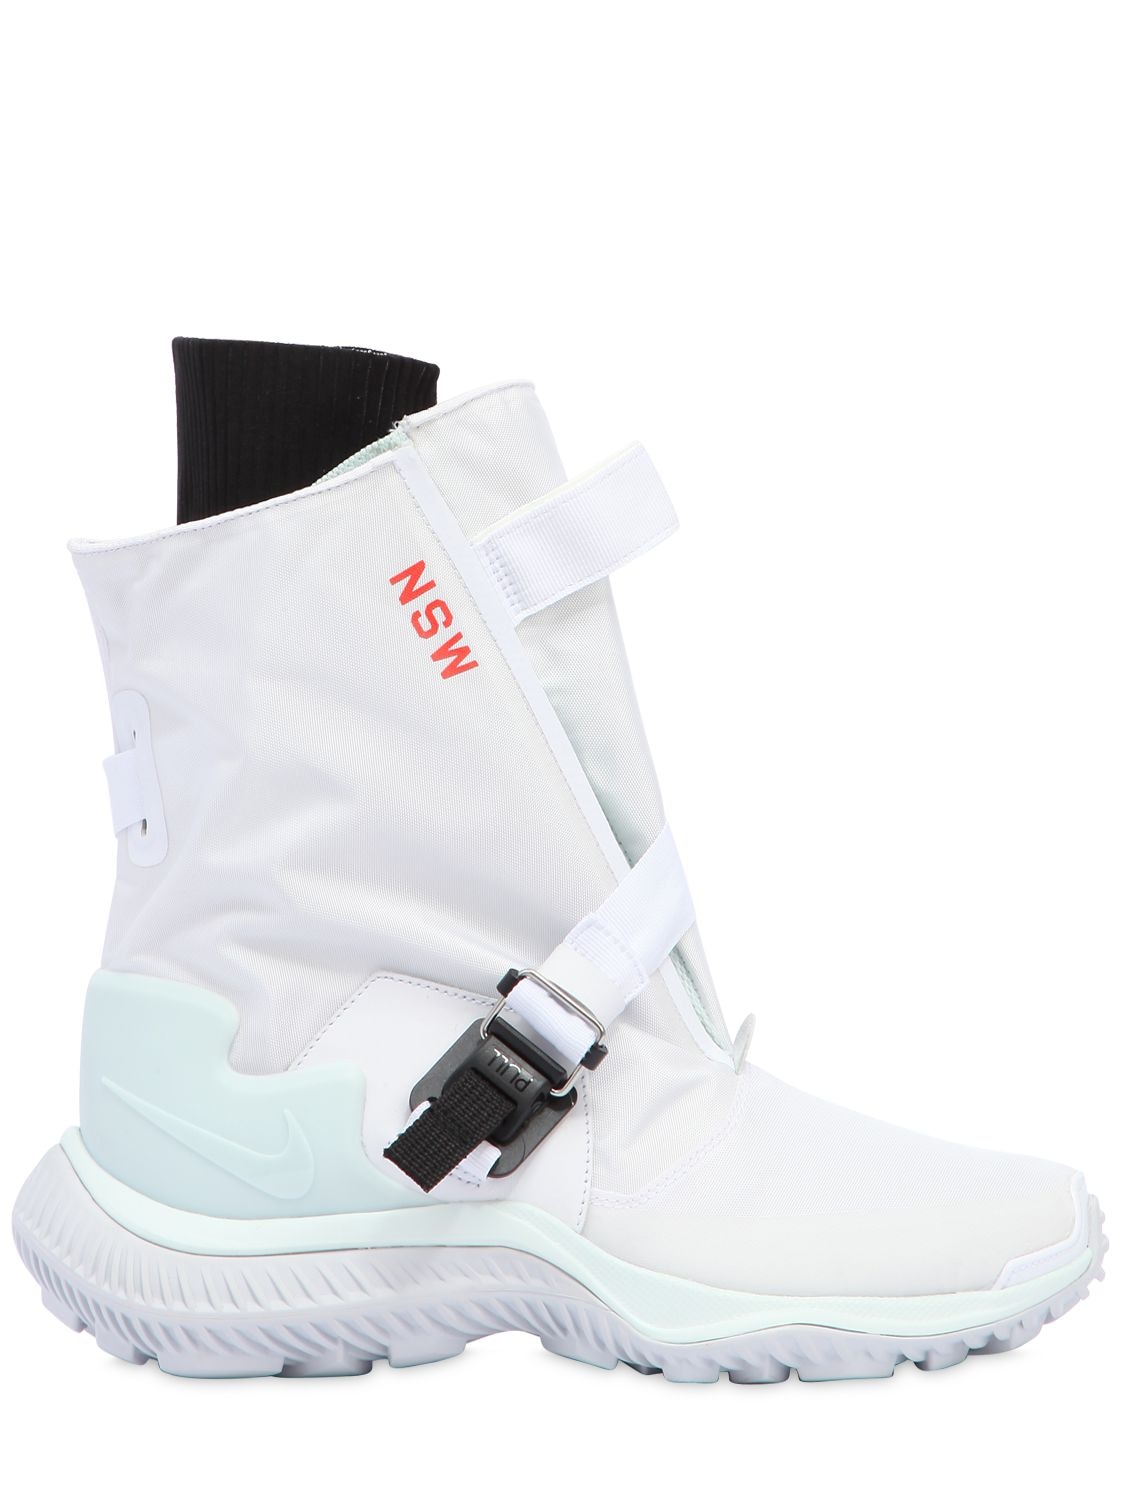 Nike Acg.009.bt Waterproof Sneaker Boots In White